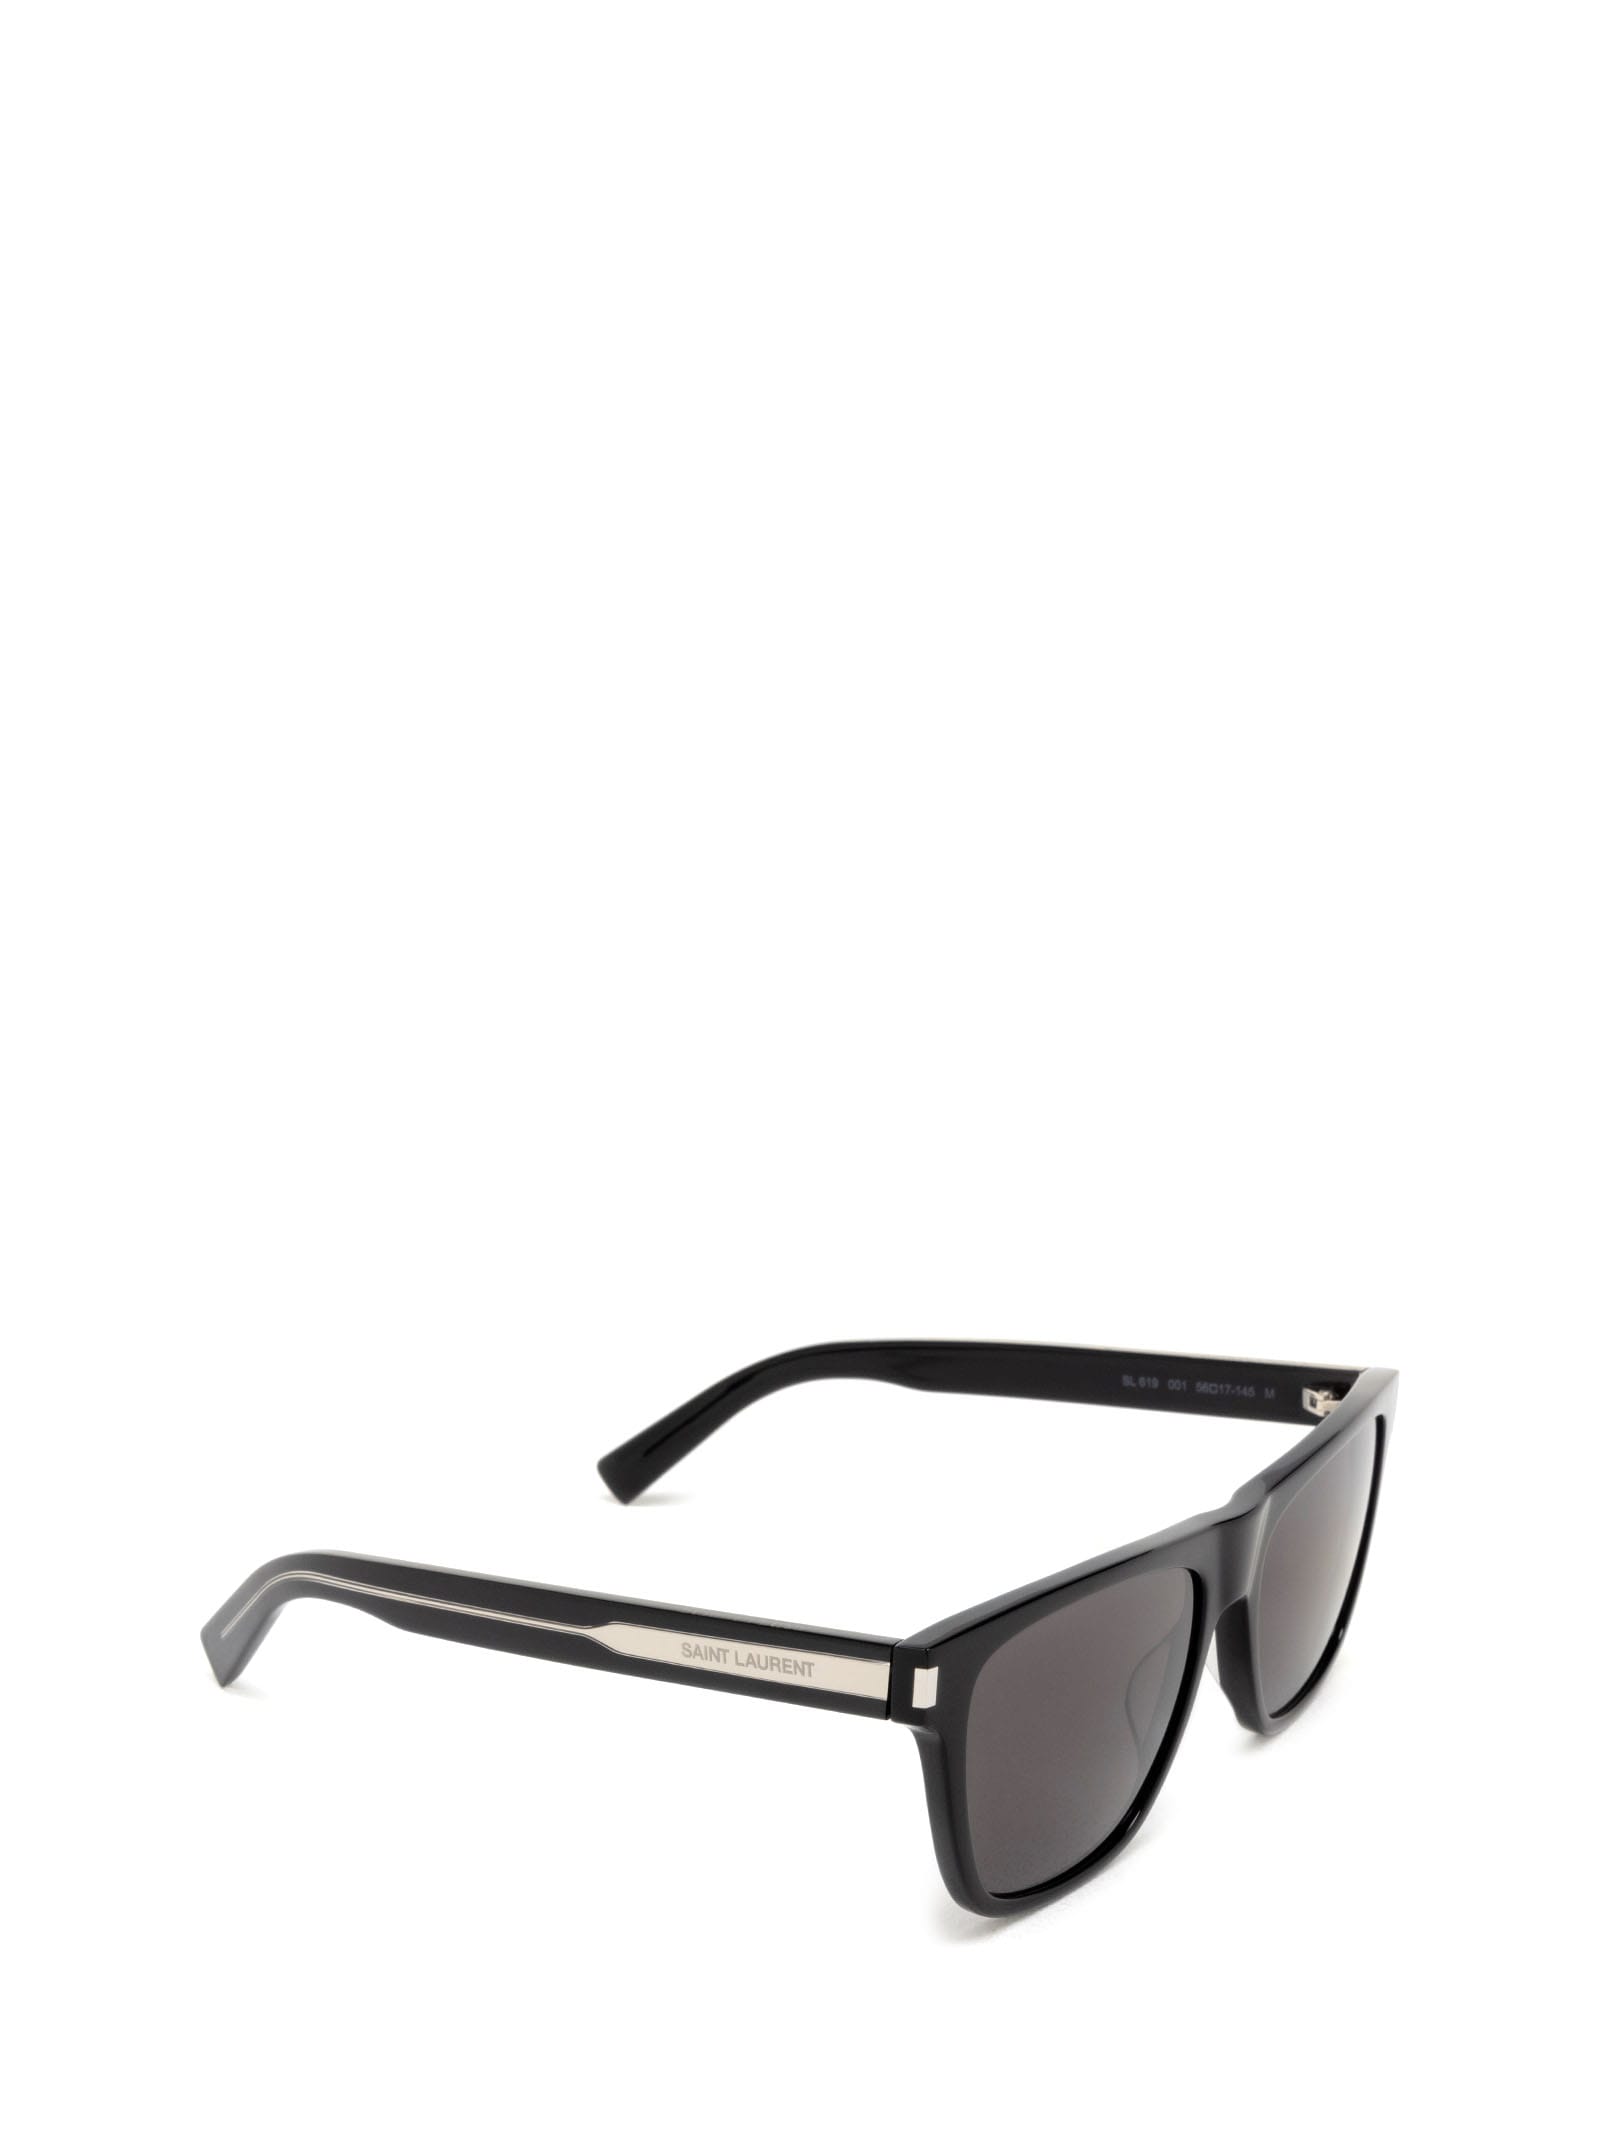 Shop Saint Laurent Sl 619 Black Sunglasses